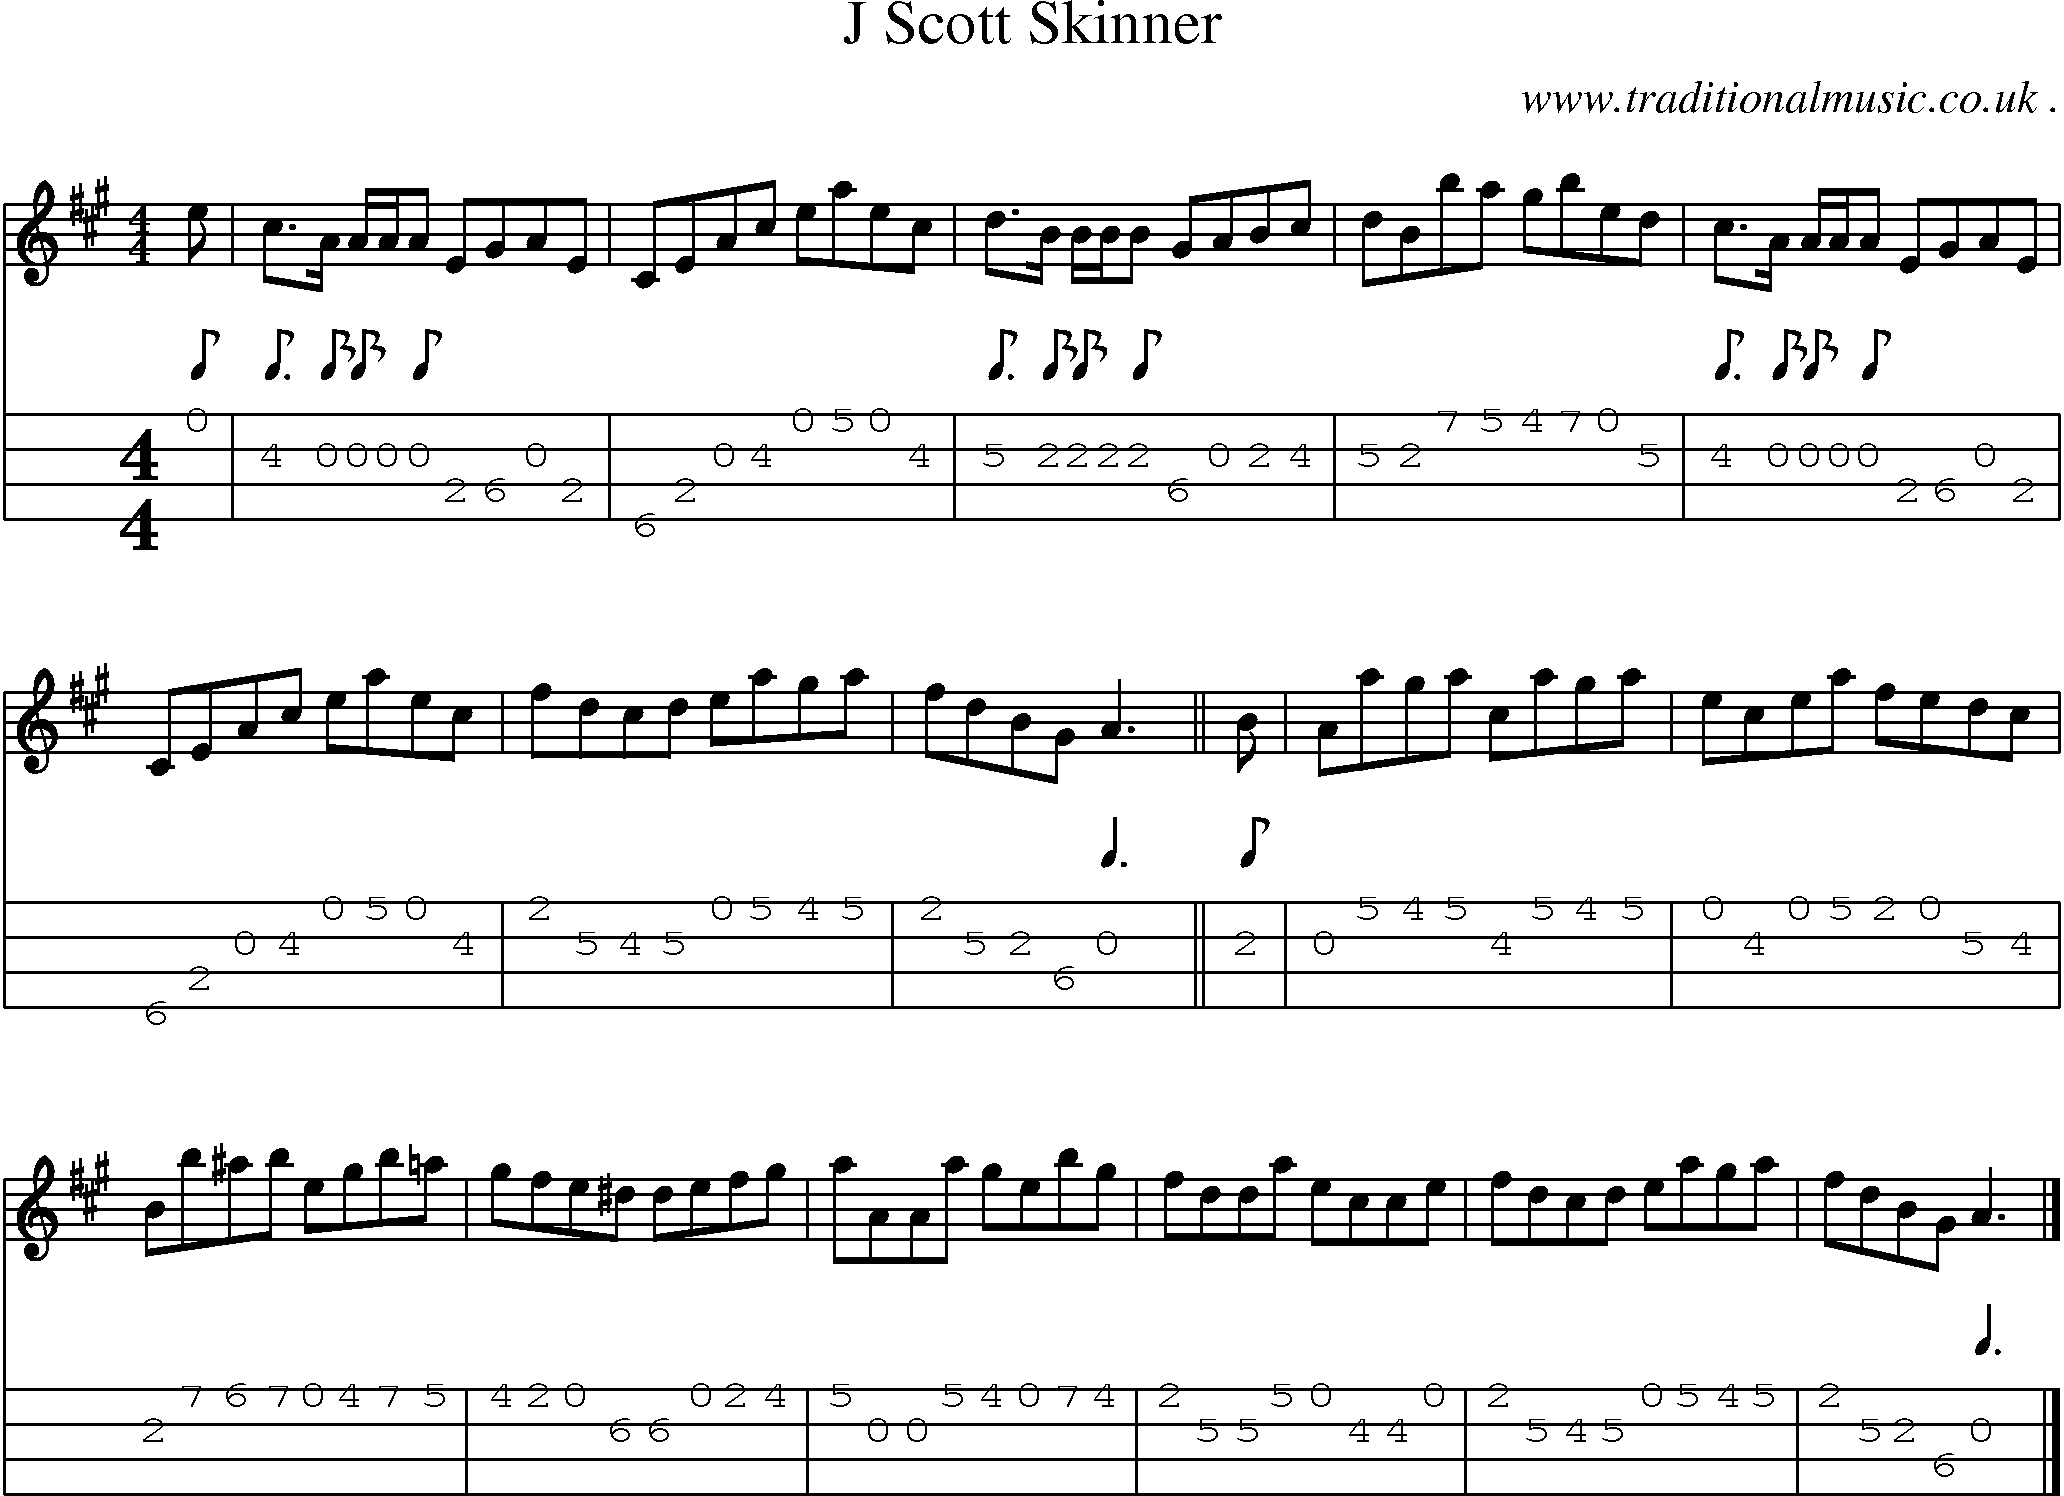 Sheet-music  score, Chords and Mandolin Tabs for J Scott Skinner